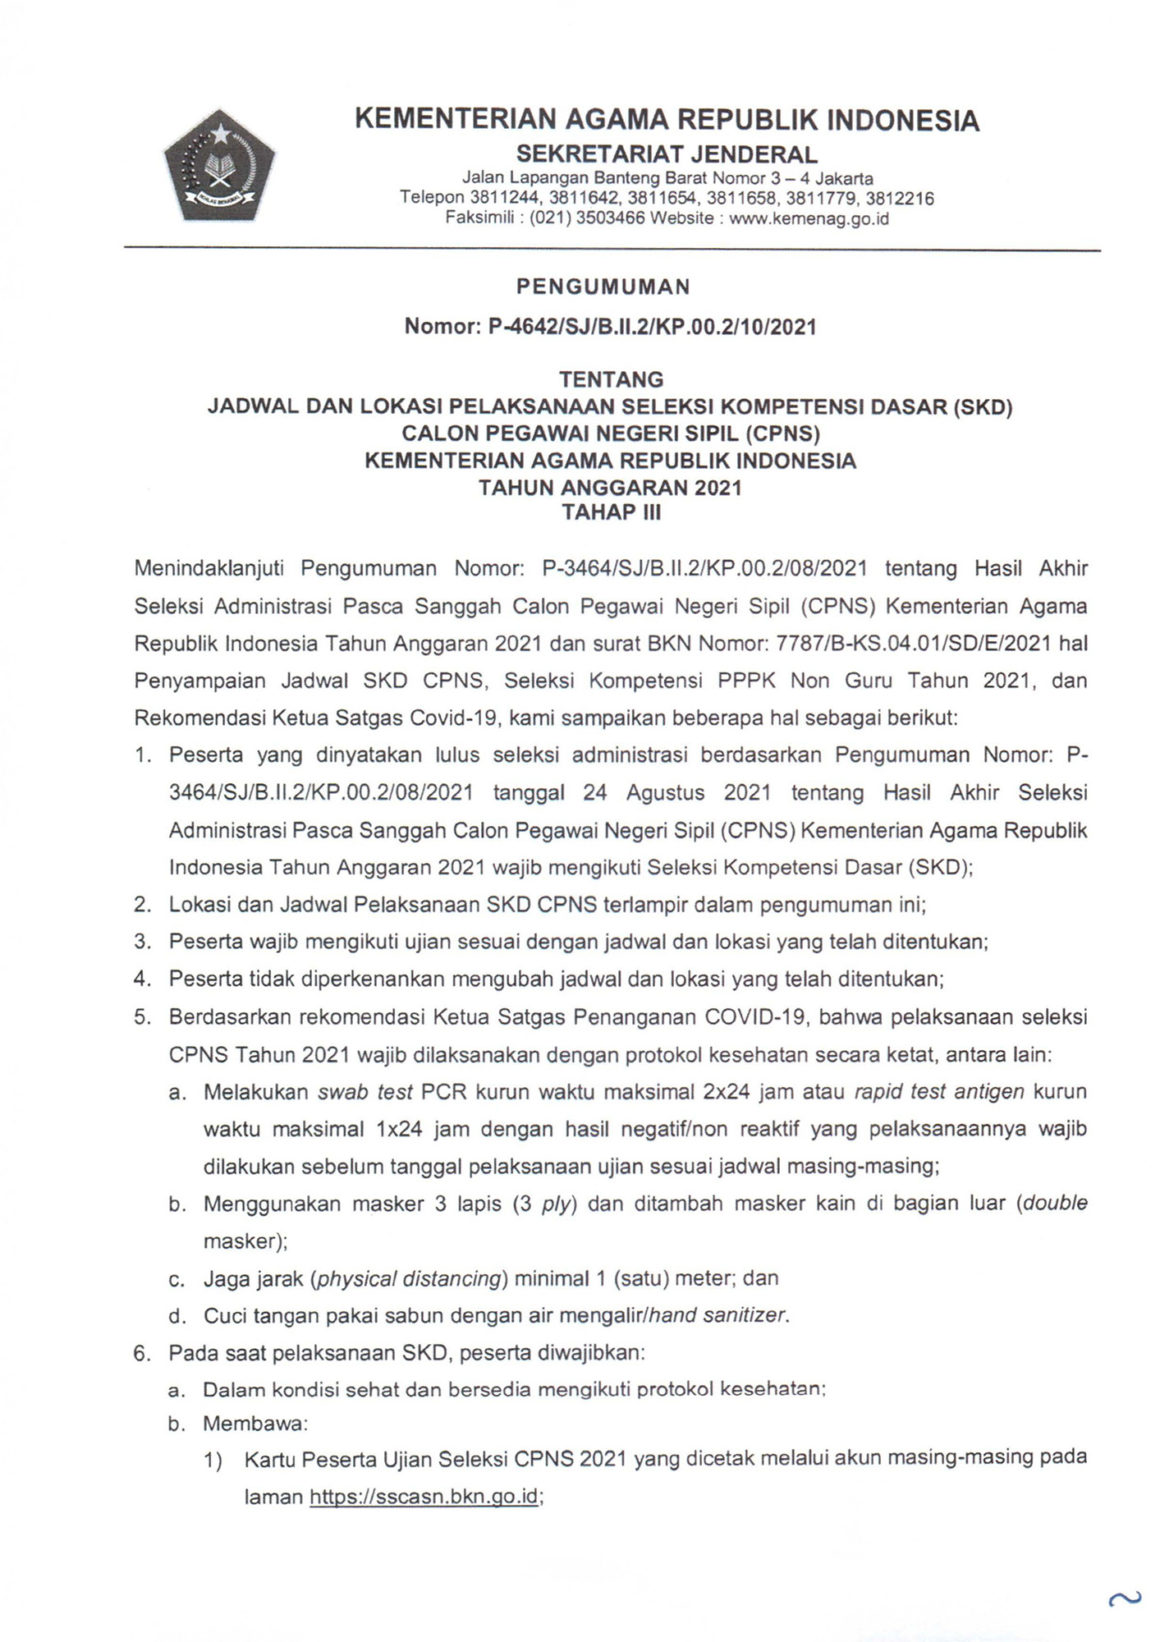 Jadwal dan Lokasi Pelaksanaan Seleksi Kompetisi Dasar (SKD) CPNS UIN Sumatera Utara Tahap III